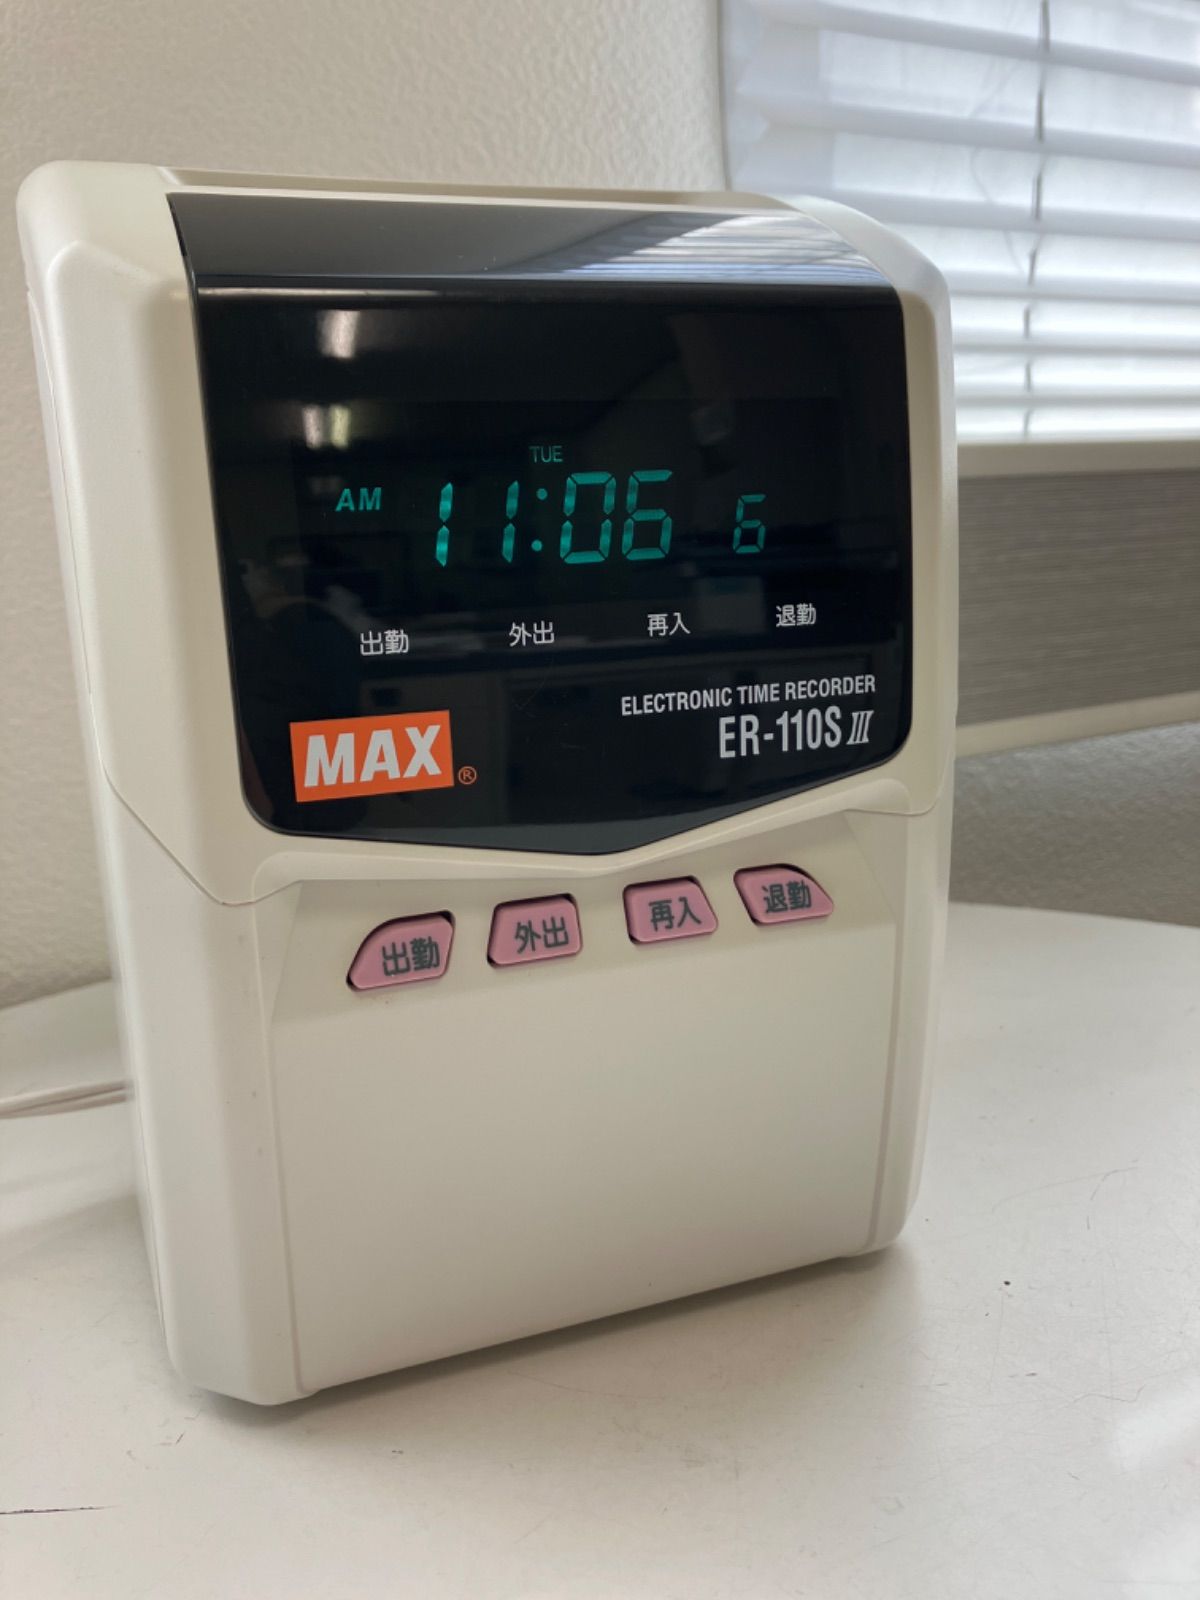 マックス タイムレコーダ 抗菌・抗ウイルス仕様 電波時計付き ER-110SUW AB - 3